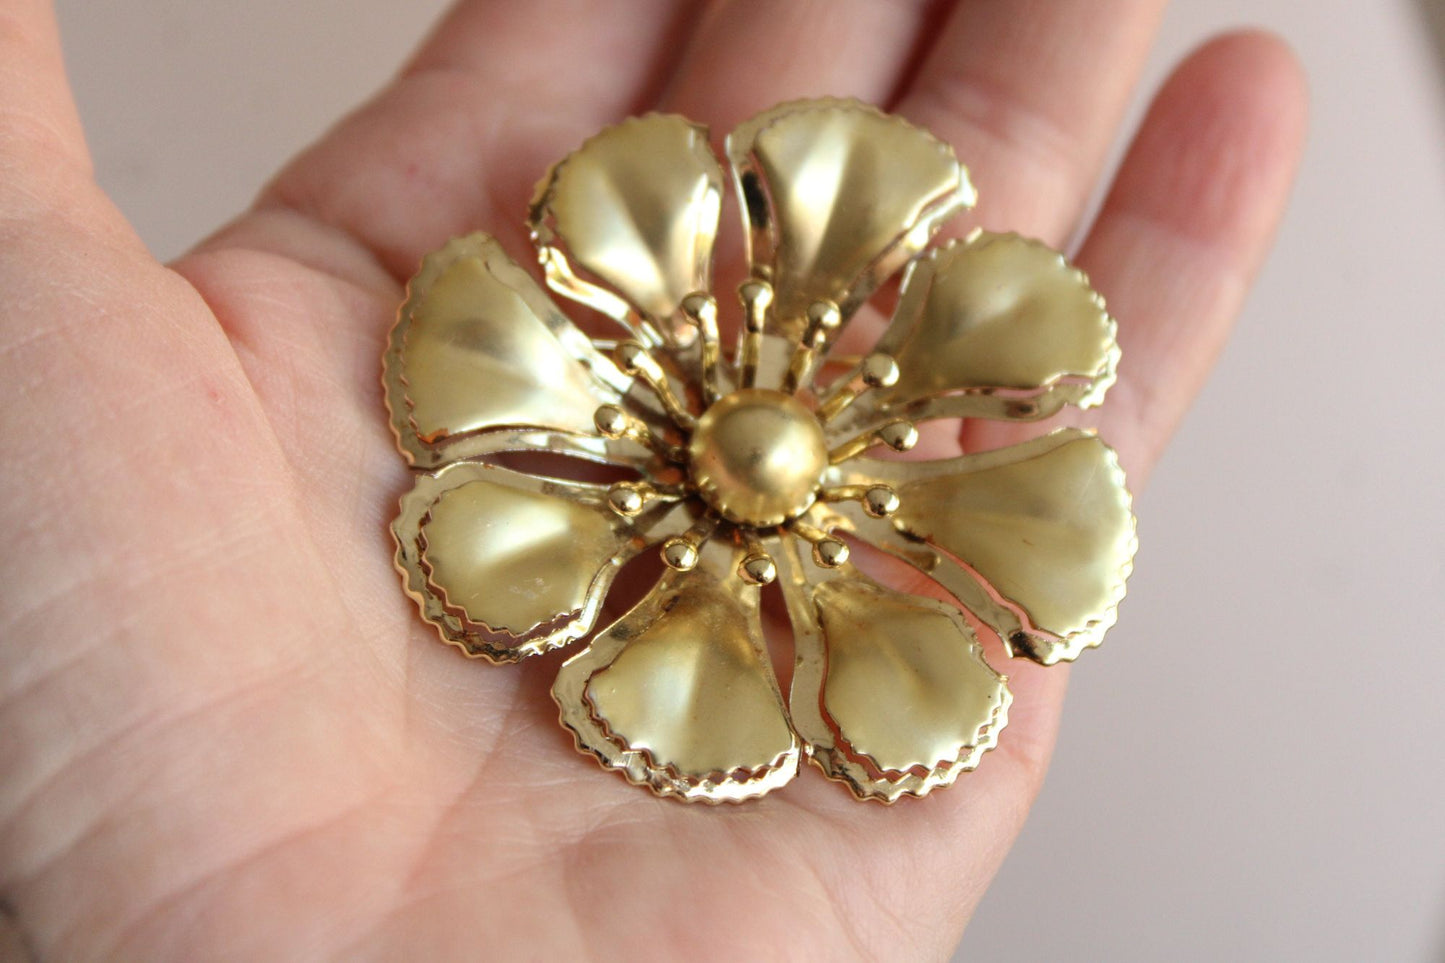 Vintage 1960s Flower in Gold Tone Metal Brooch